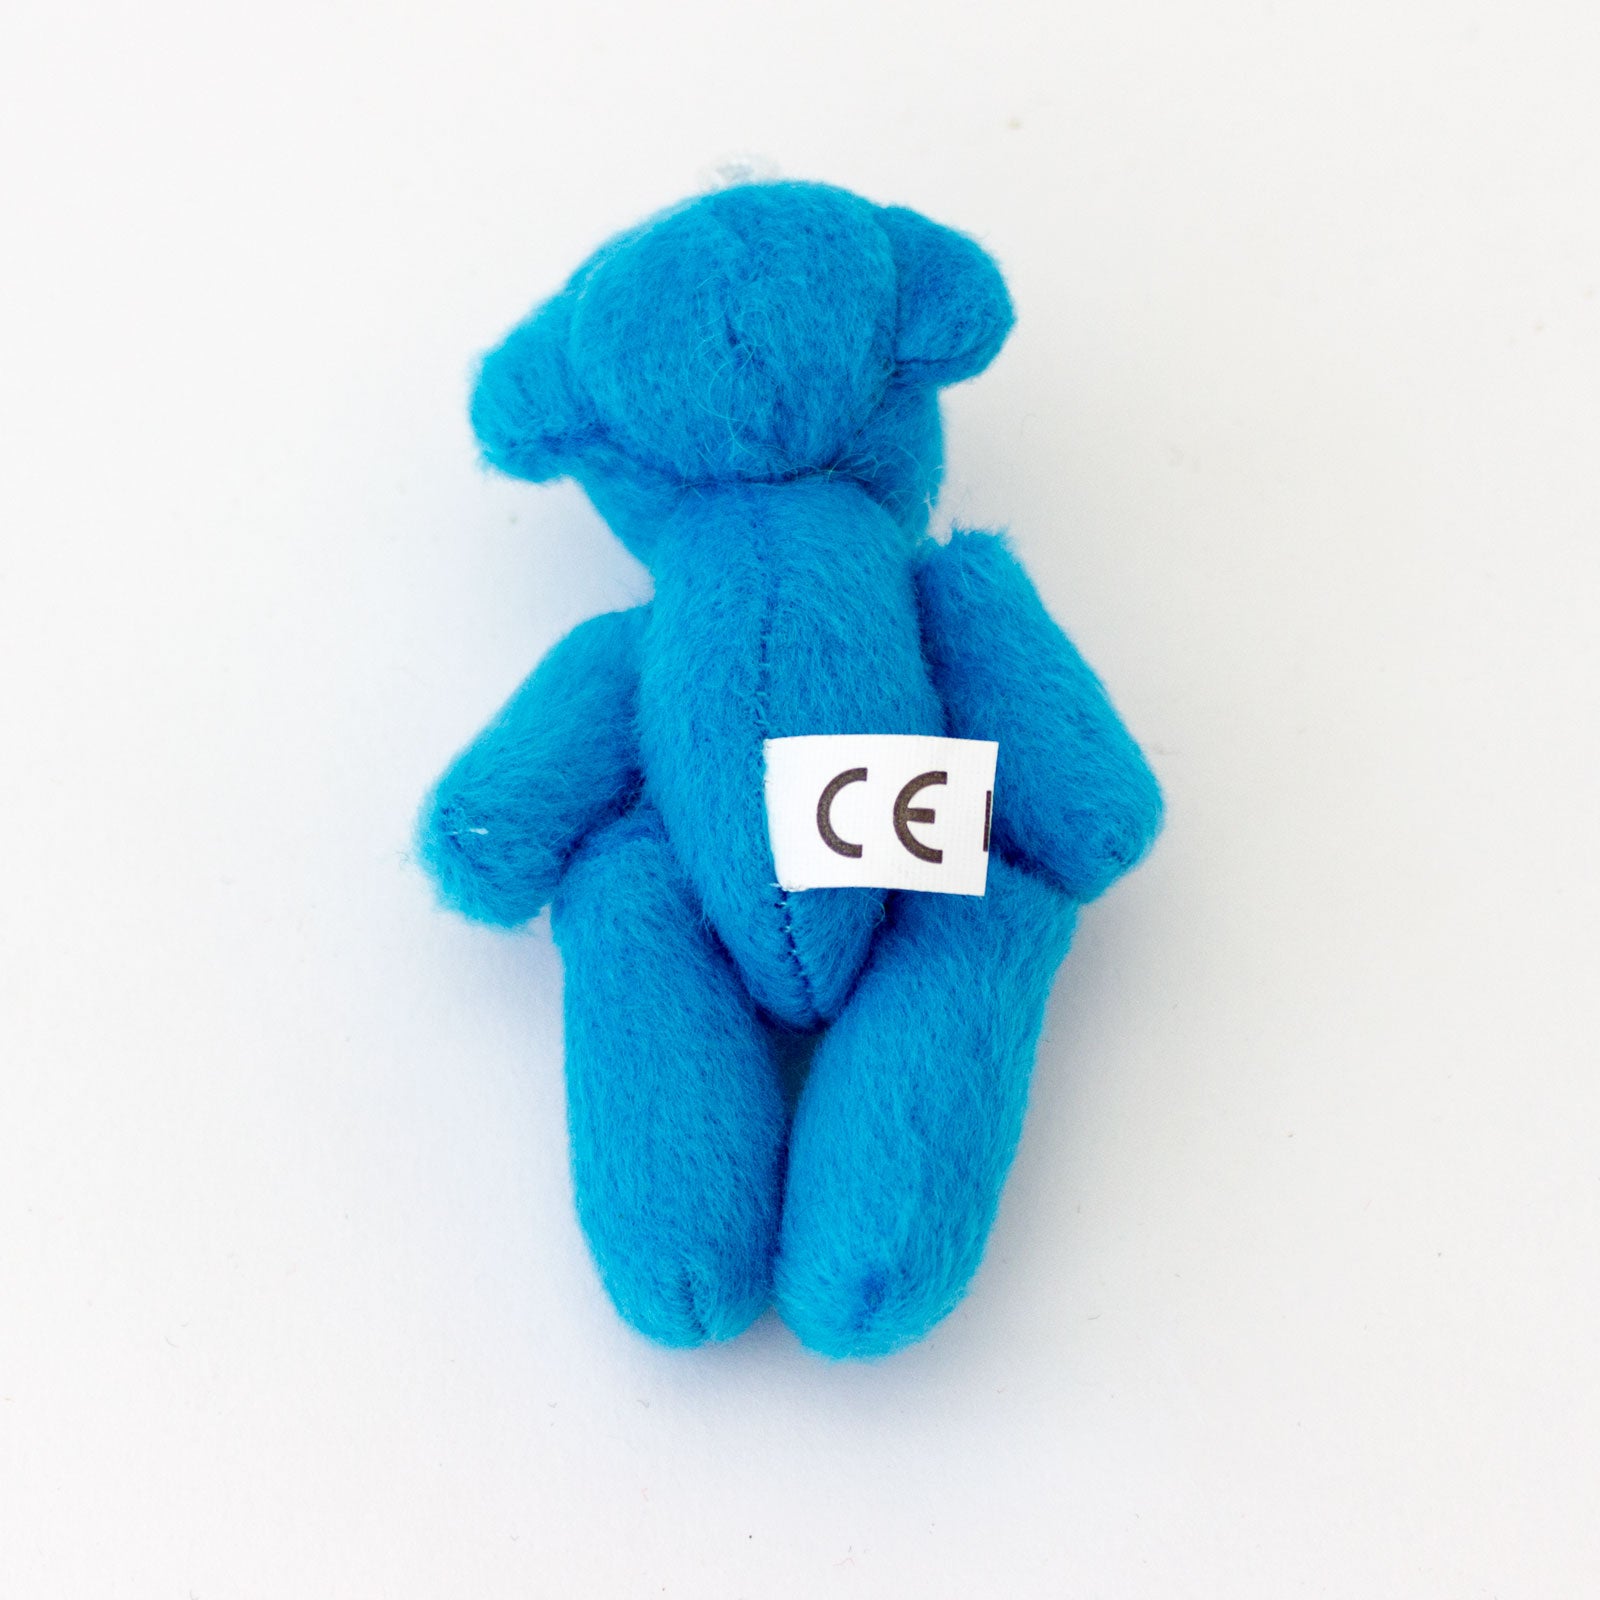 Small BLUE Teddy Bears X 55 - Cute Soft Adorable